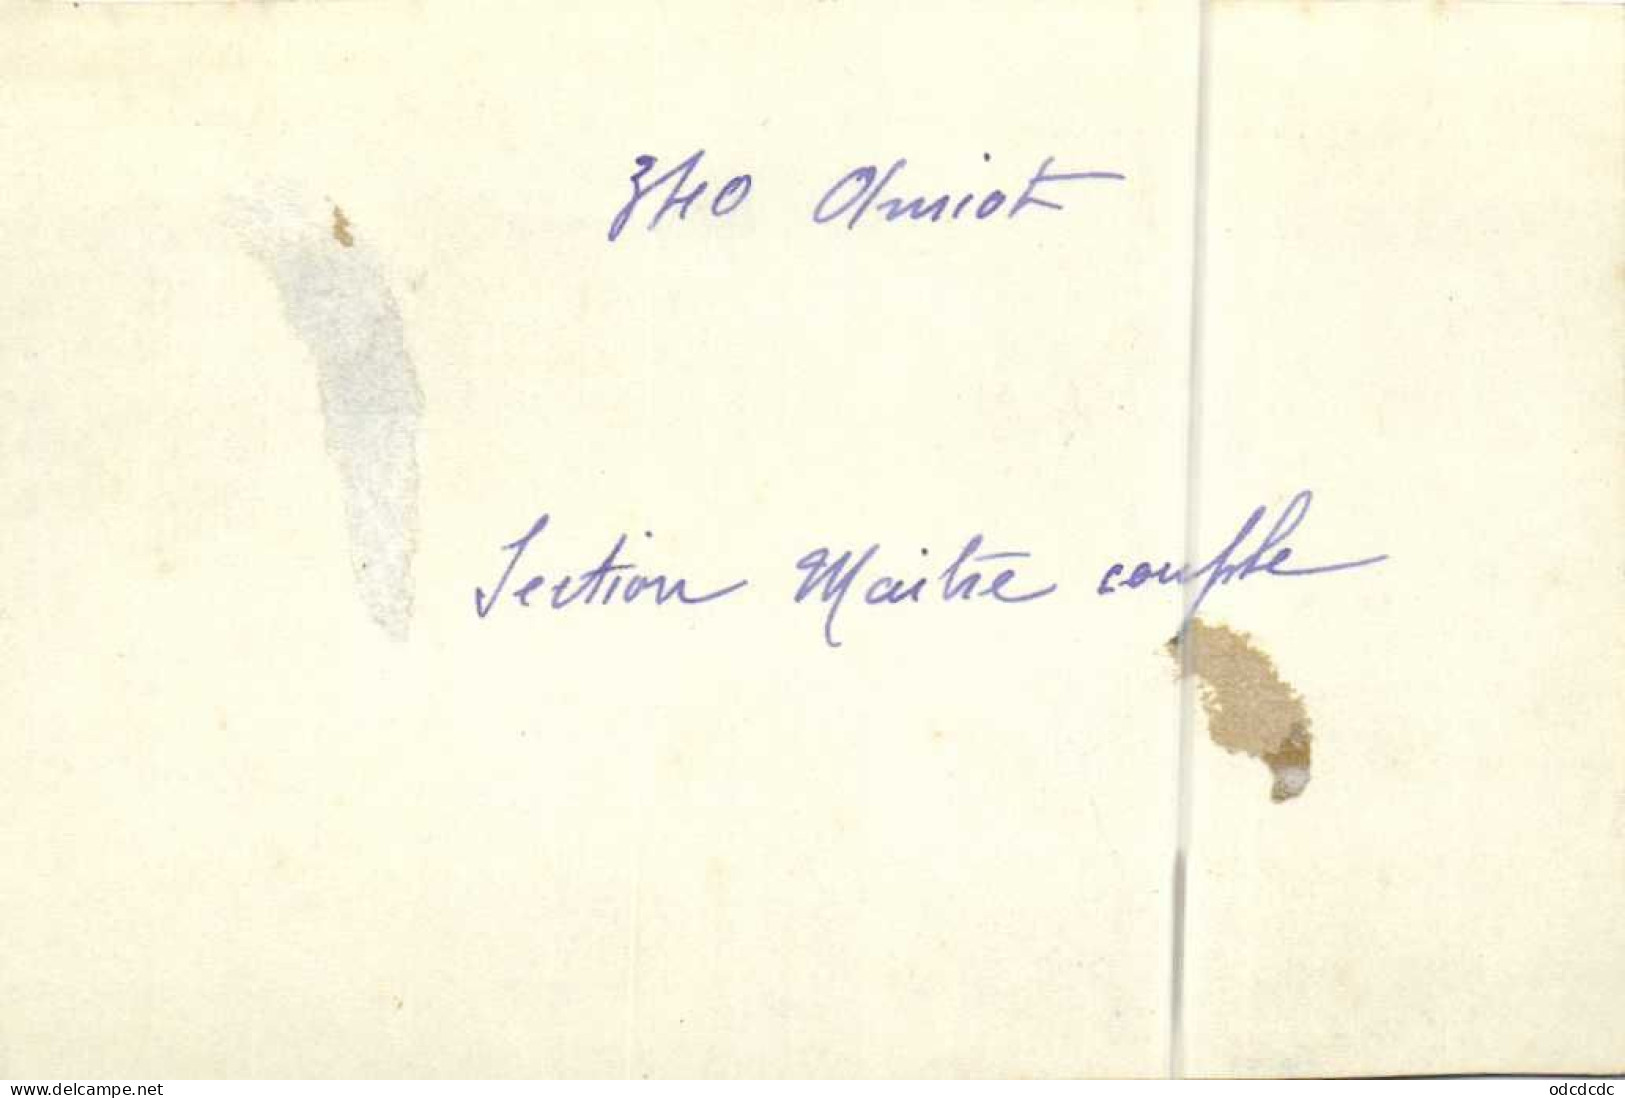 Pgoto 340 Amiot Section Maitre Couple RV - 1919-1938: Entre Guerres